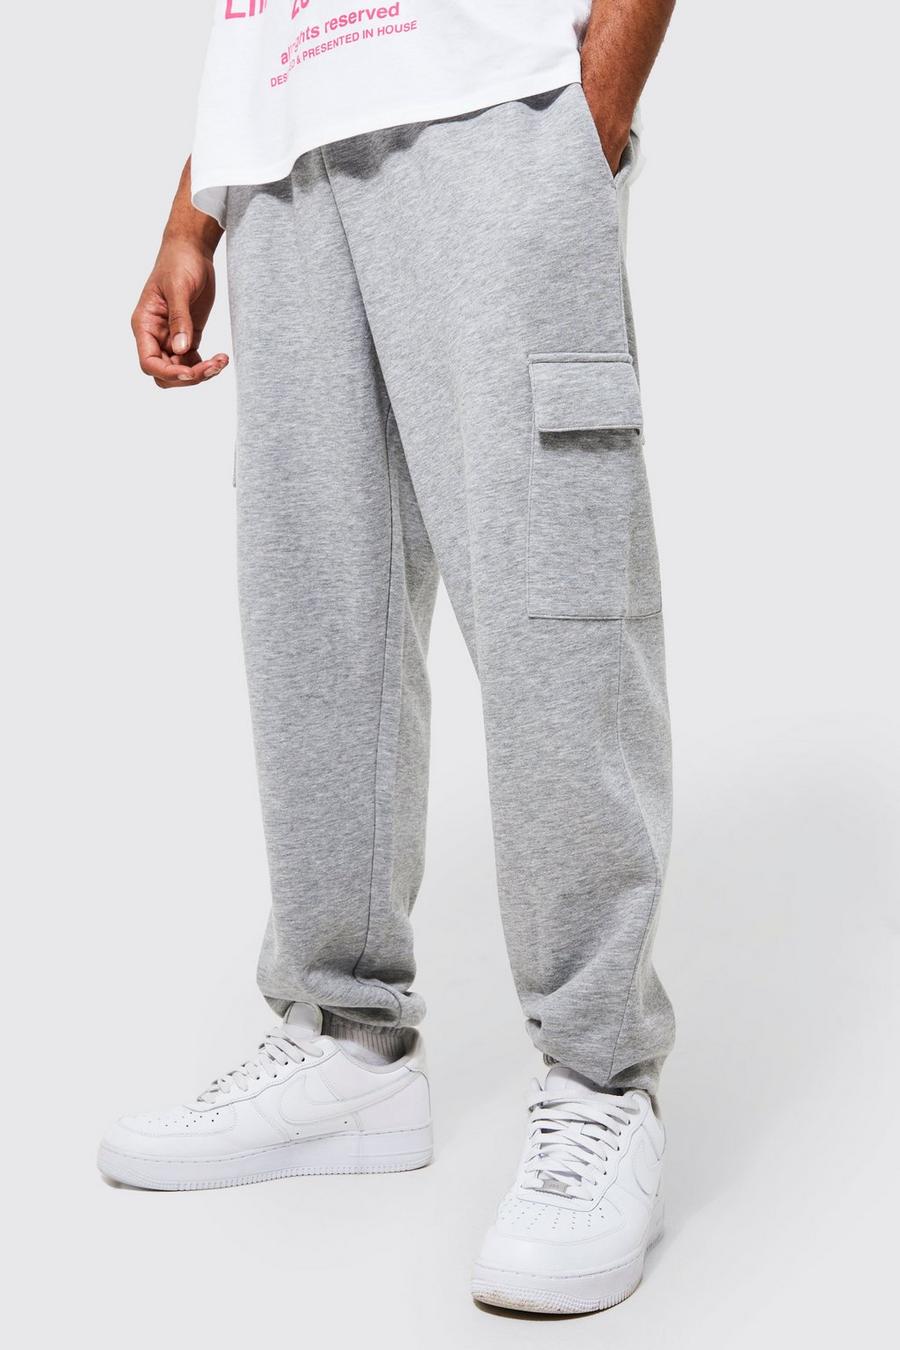 Pantalón deportivo cargo holgado con algodón ecológico, Grey marl gris